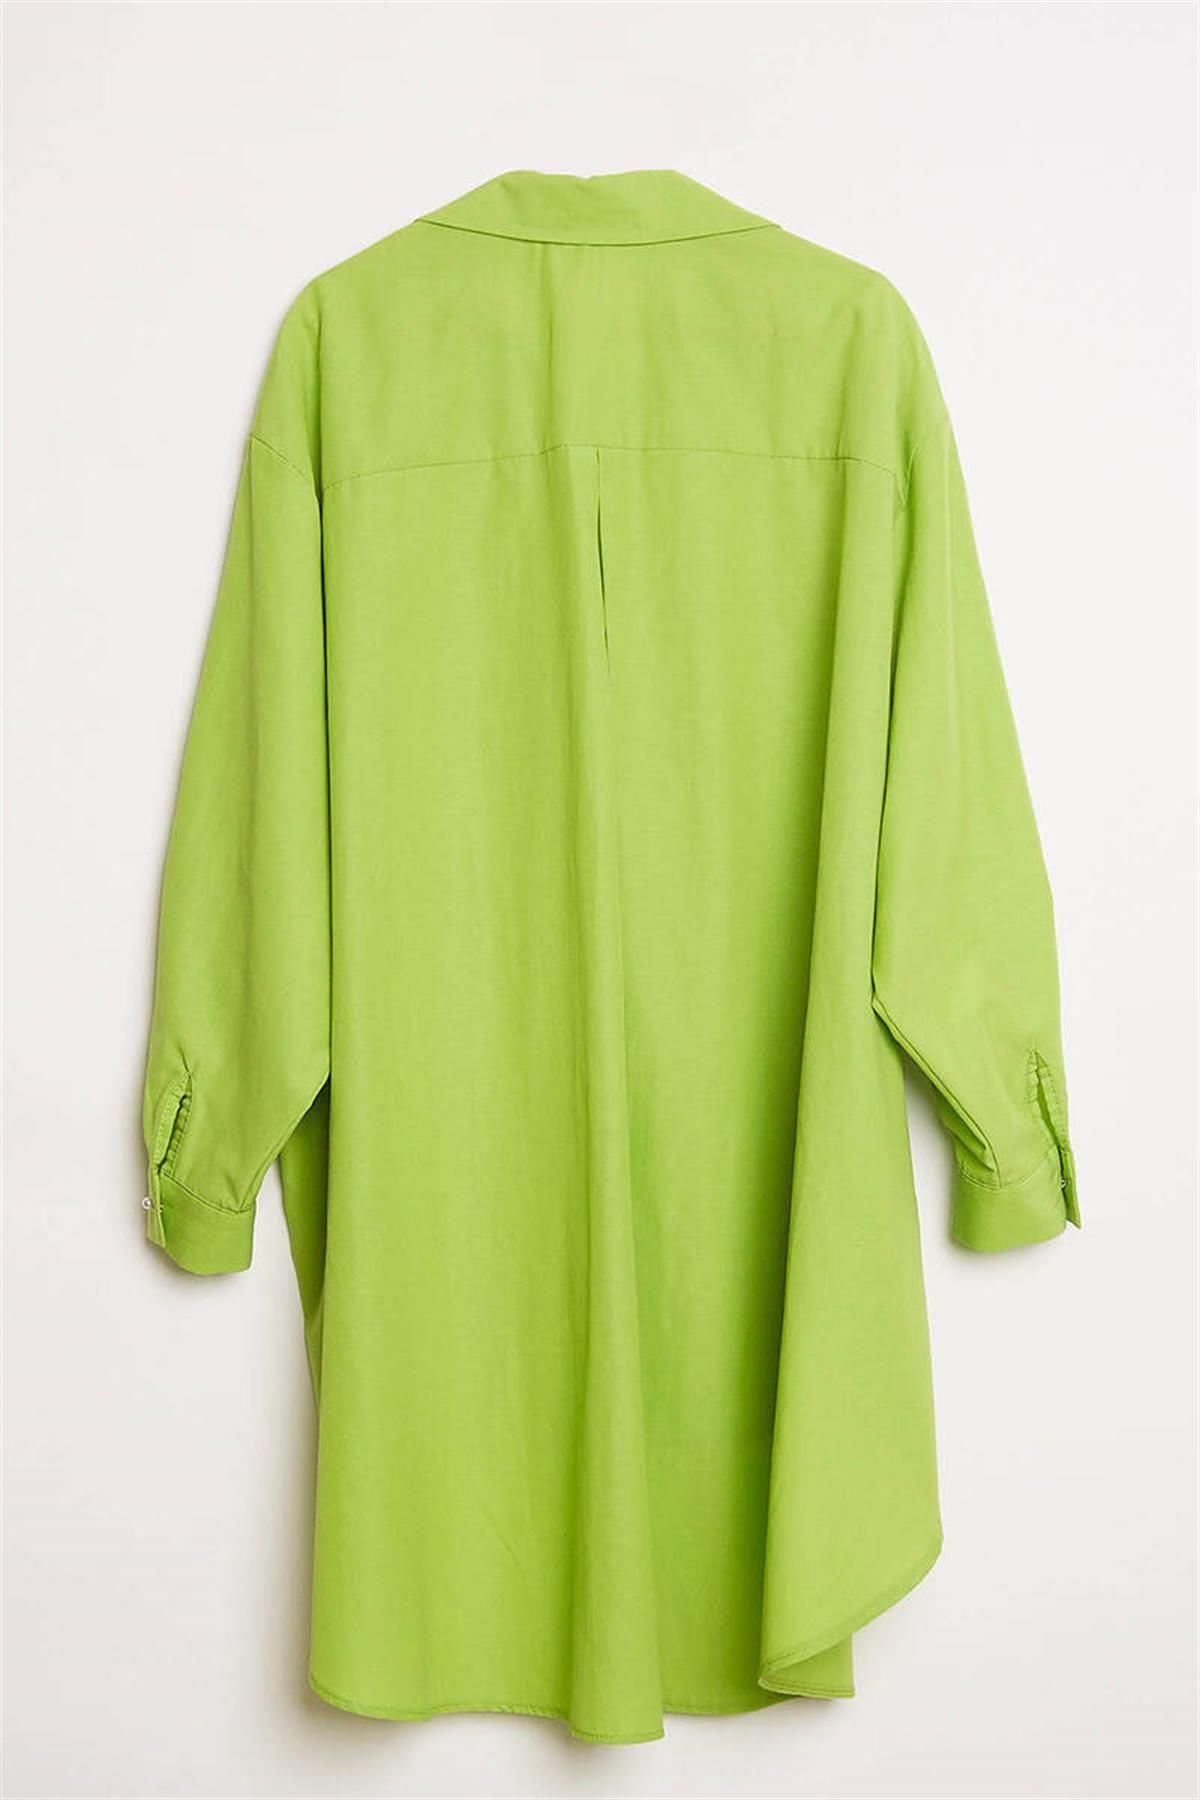 Robin İşlemeli Tunik/Gömlek M35750